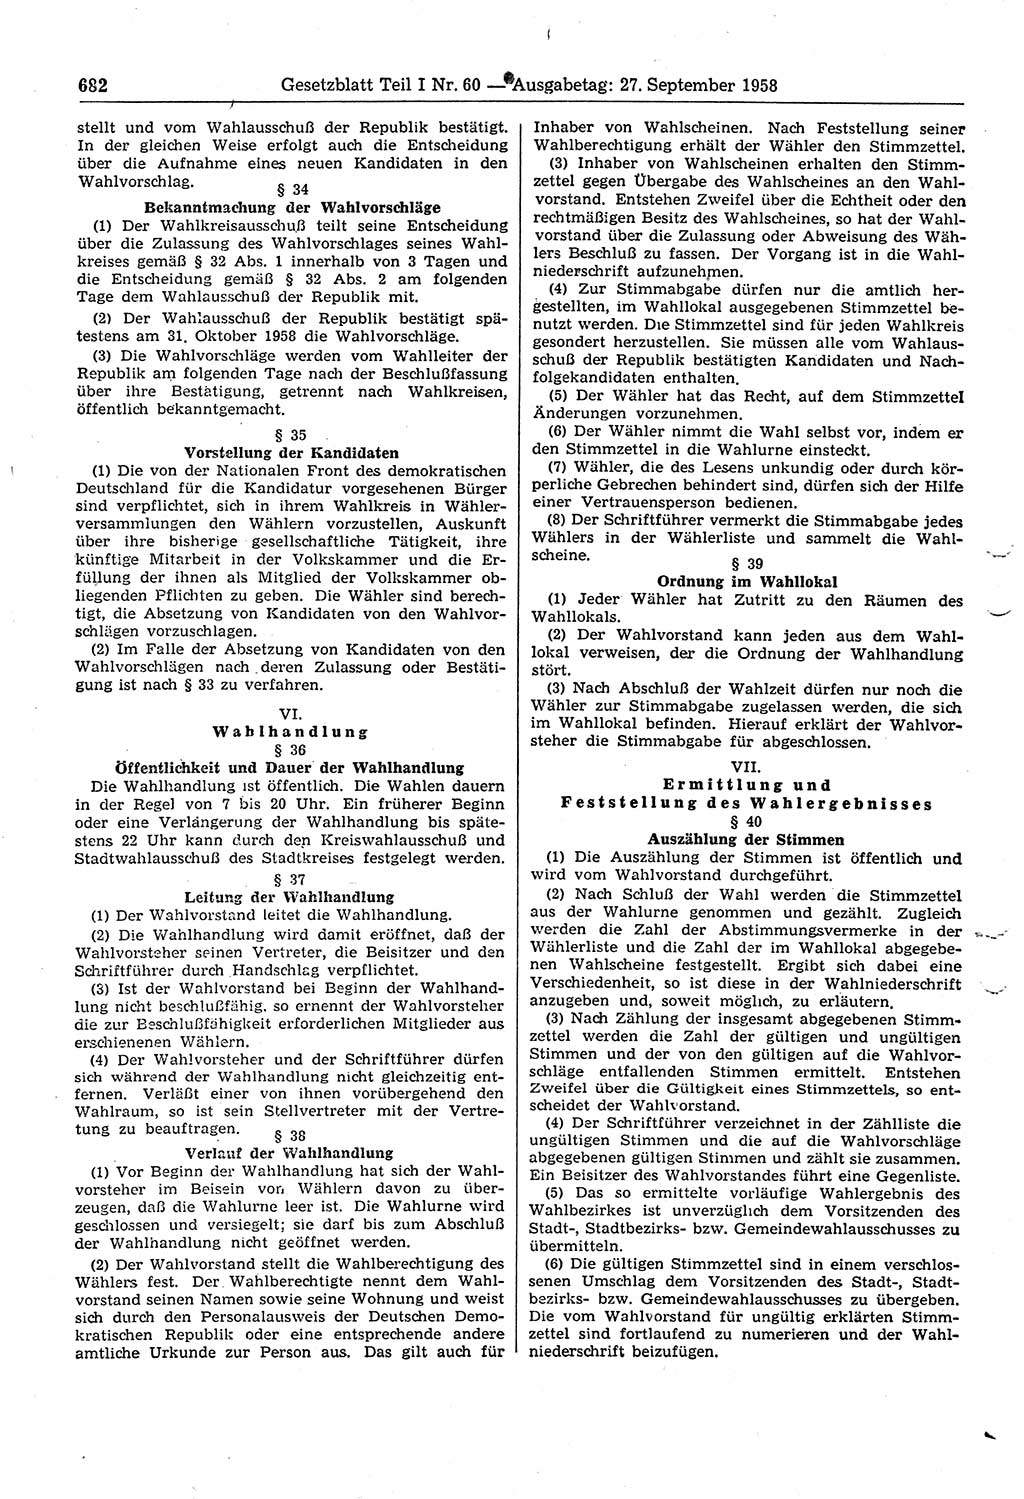 Gesetzblatt (GBl.) der Deutschen Demokratischen Republik (DDR) Teil Ⅰ 1958, Seite 682 (GBl. DDR Ⅰ 1958, S. 682)